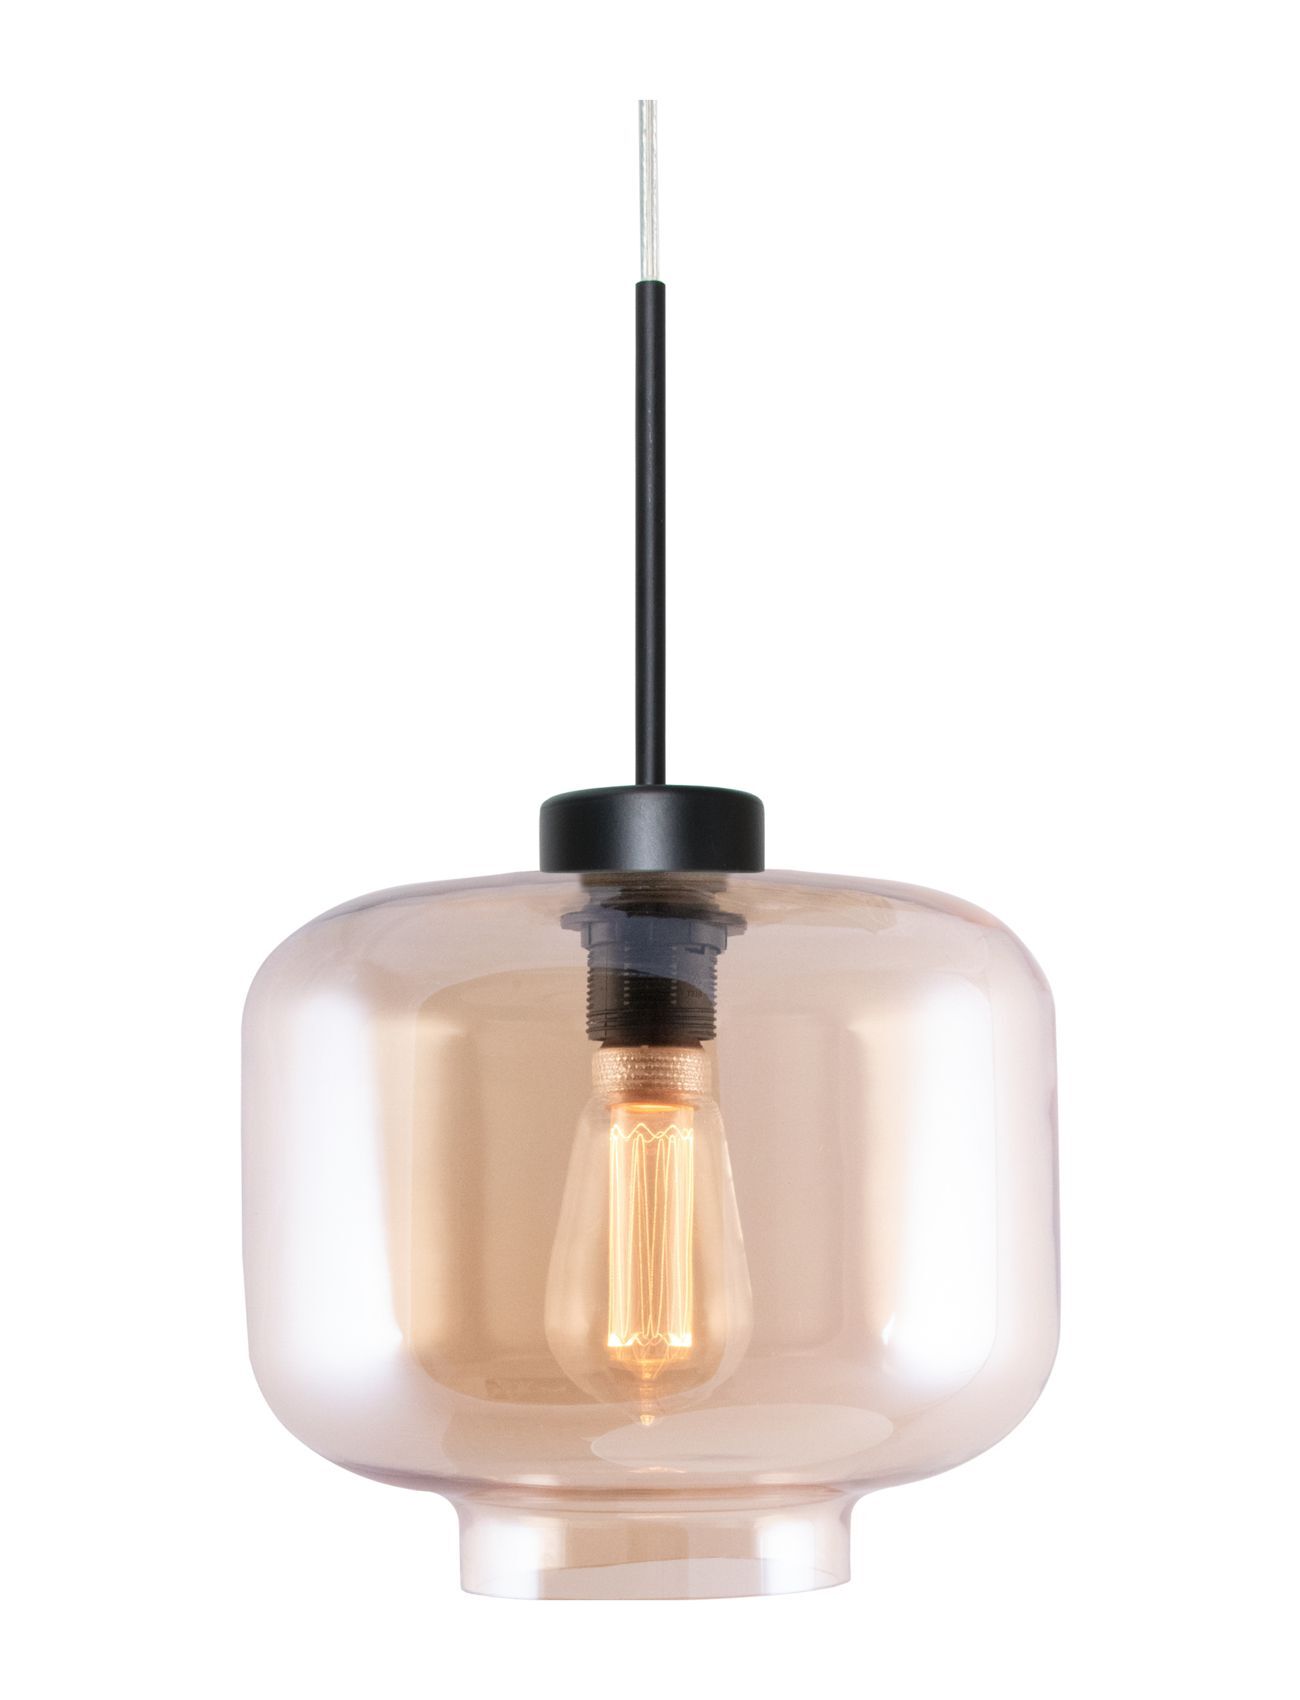 Globen Lighting Pendant Ritz Home Lighting Lamps Ceiling Lamps Pendant Lamps Multi/mønstret Globen Lighting